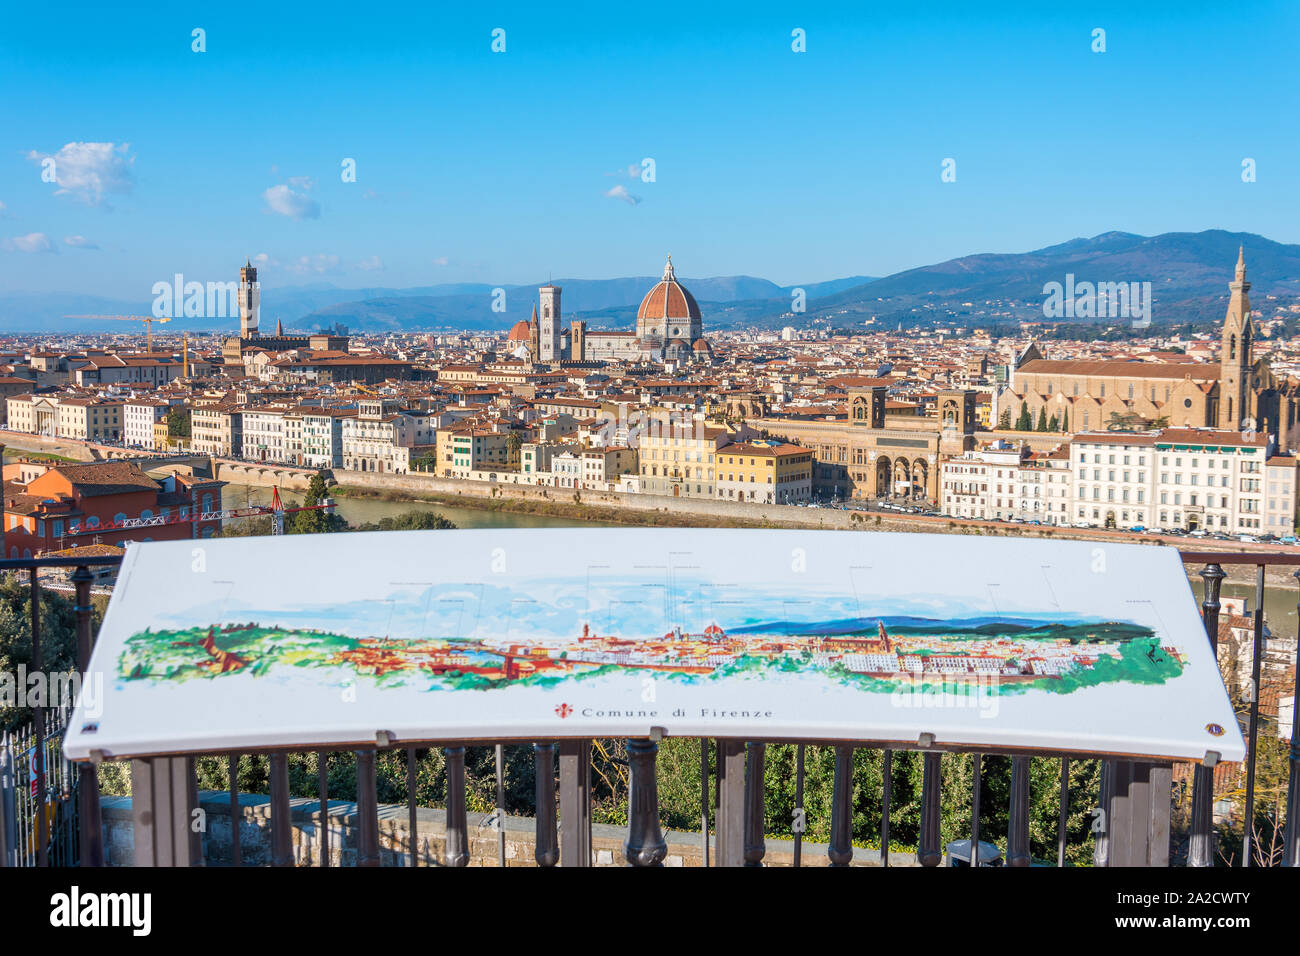 Plan de ville ville sur la plate-forme d'observation dans le Piazzale Michelangelo. Florence Italie de cityscape vue aérienne. 02 janvier 2019. Banque D'Images